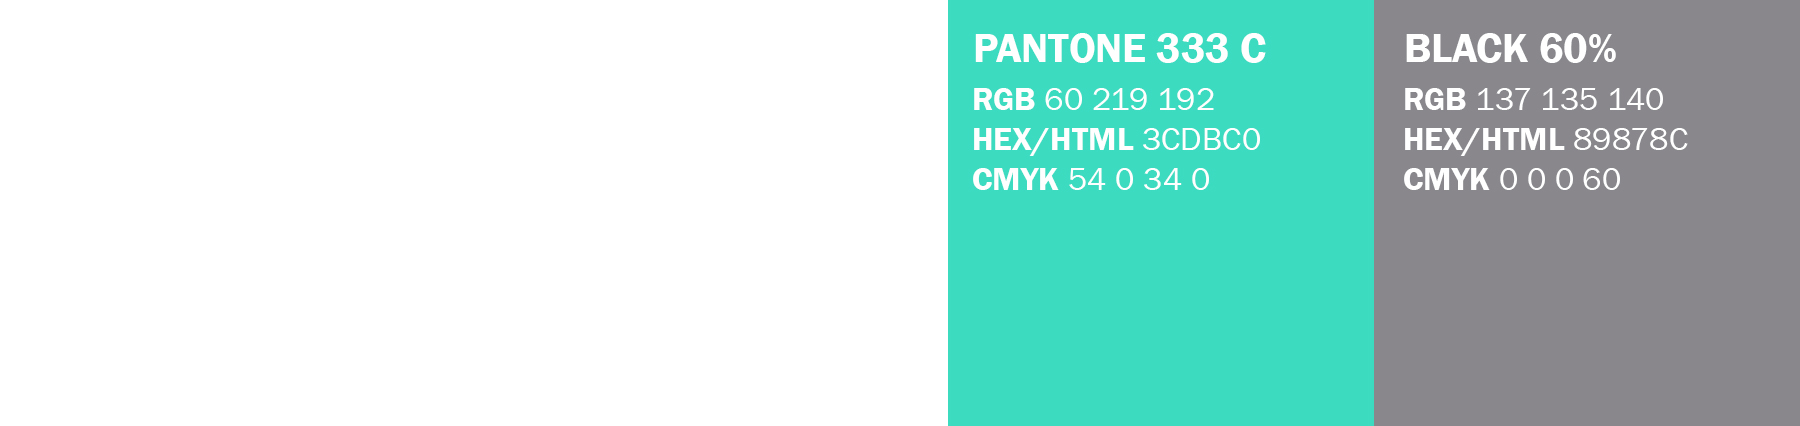 colores usados en el logotipo, pantone 333c y Black 60%